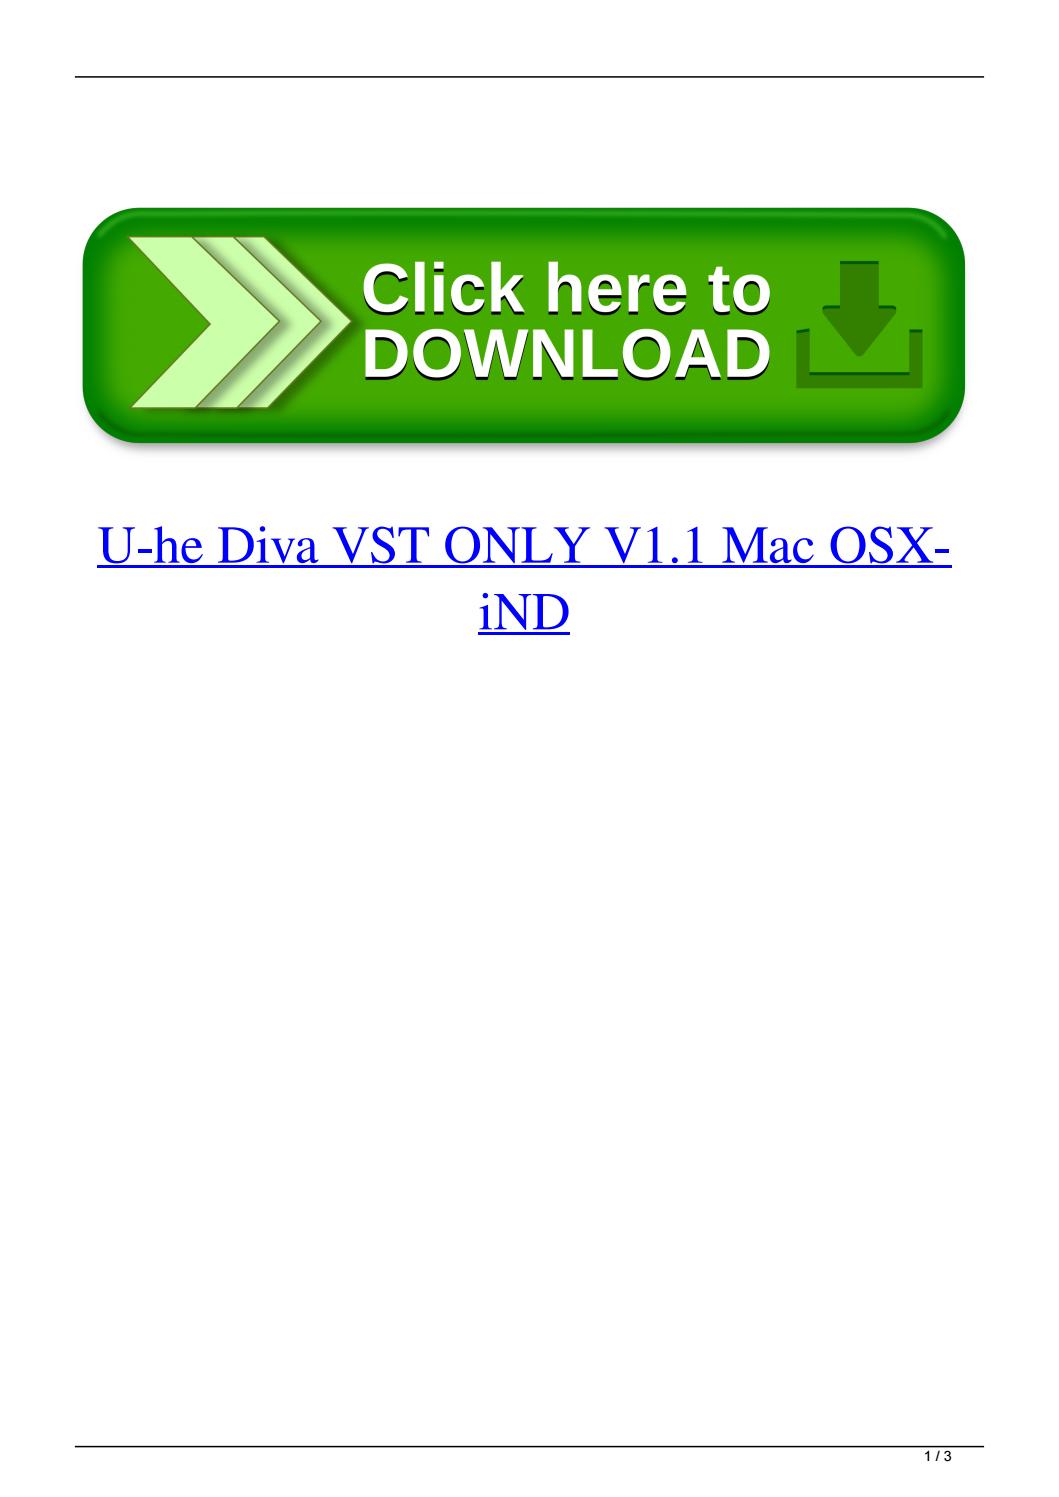 Diva Plugin Free Download Mac